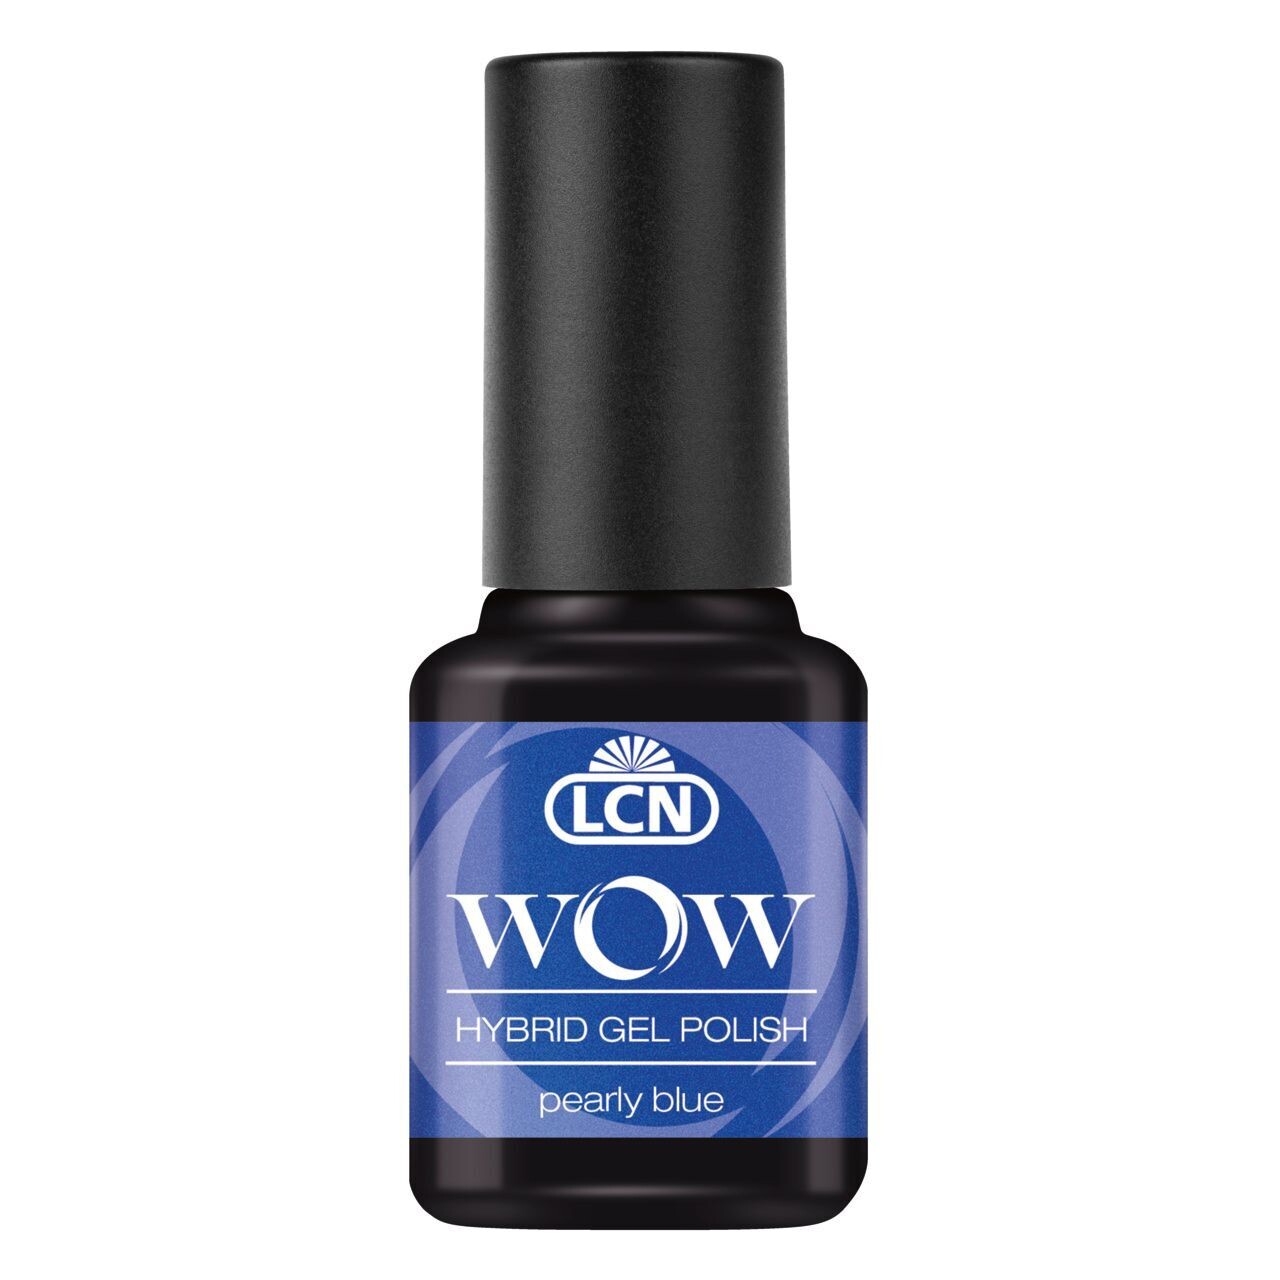 ​LCN WOW - Hybrid Gel Polish "pearly blue"